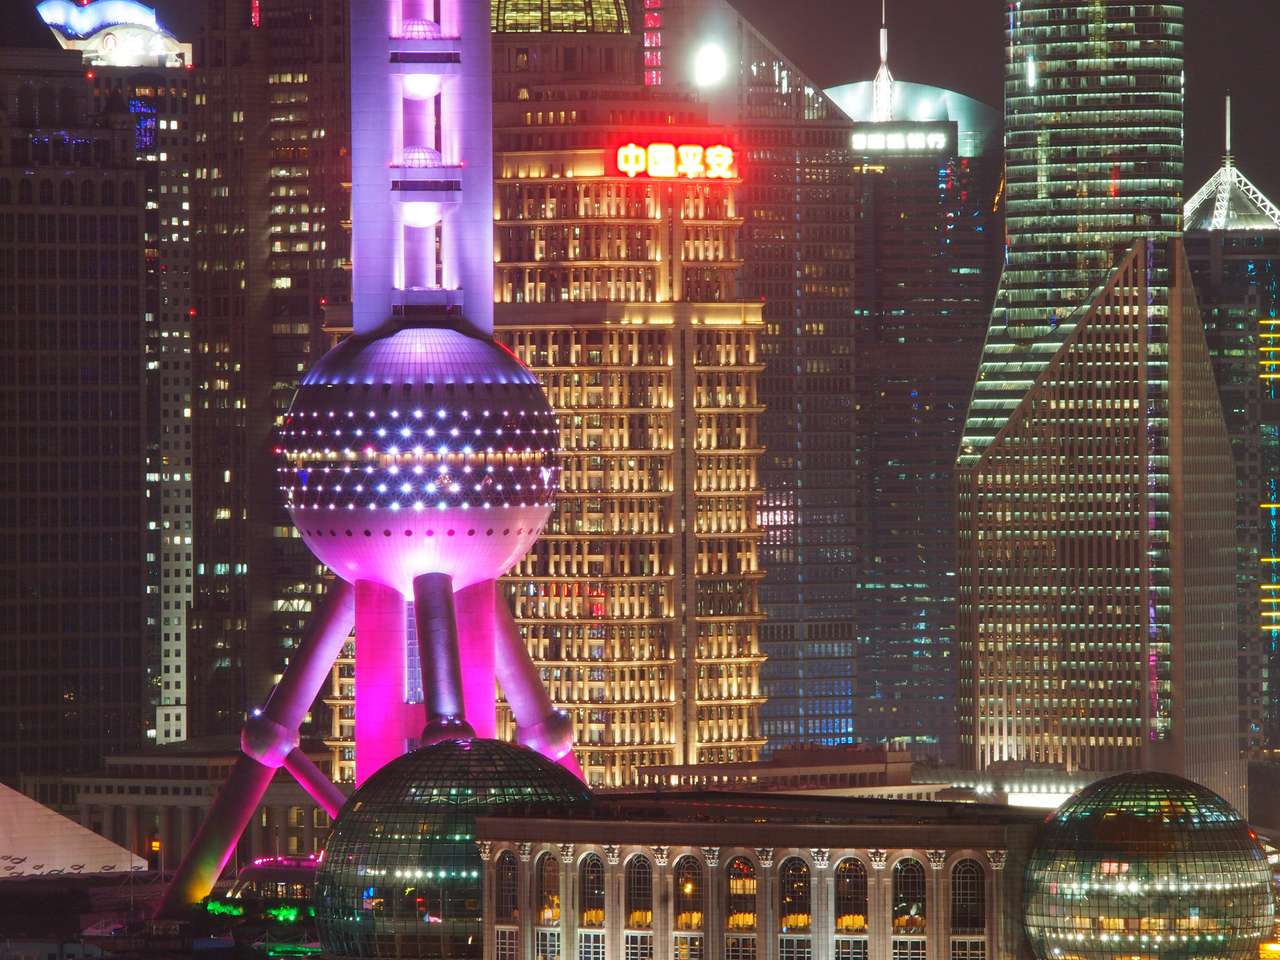 Shanghai, China - 13. Oktober 2016: Die futuristische Architektur des orientalischen Perlenturms in Pudong Online-Puzzle